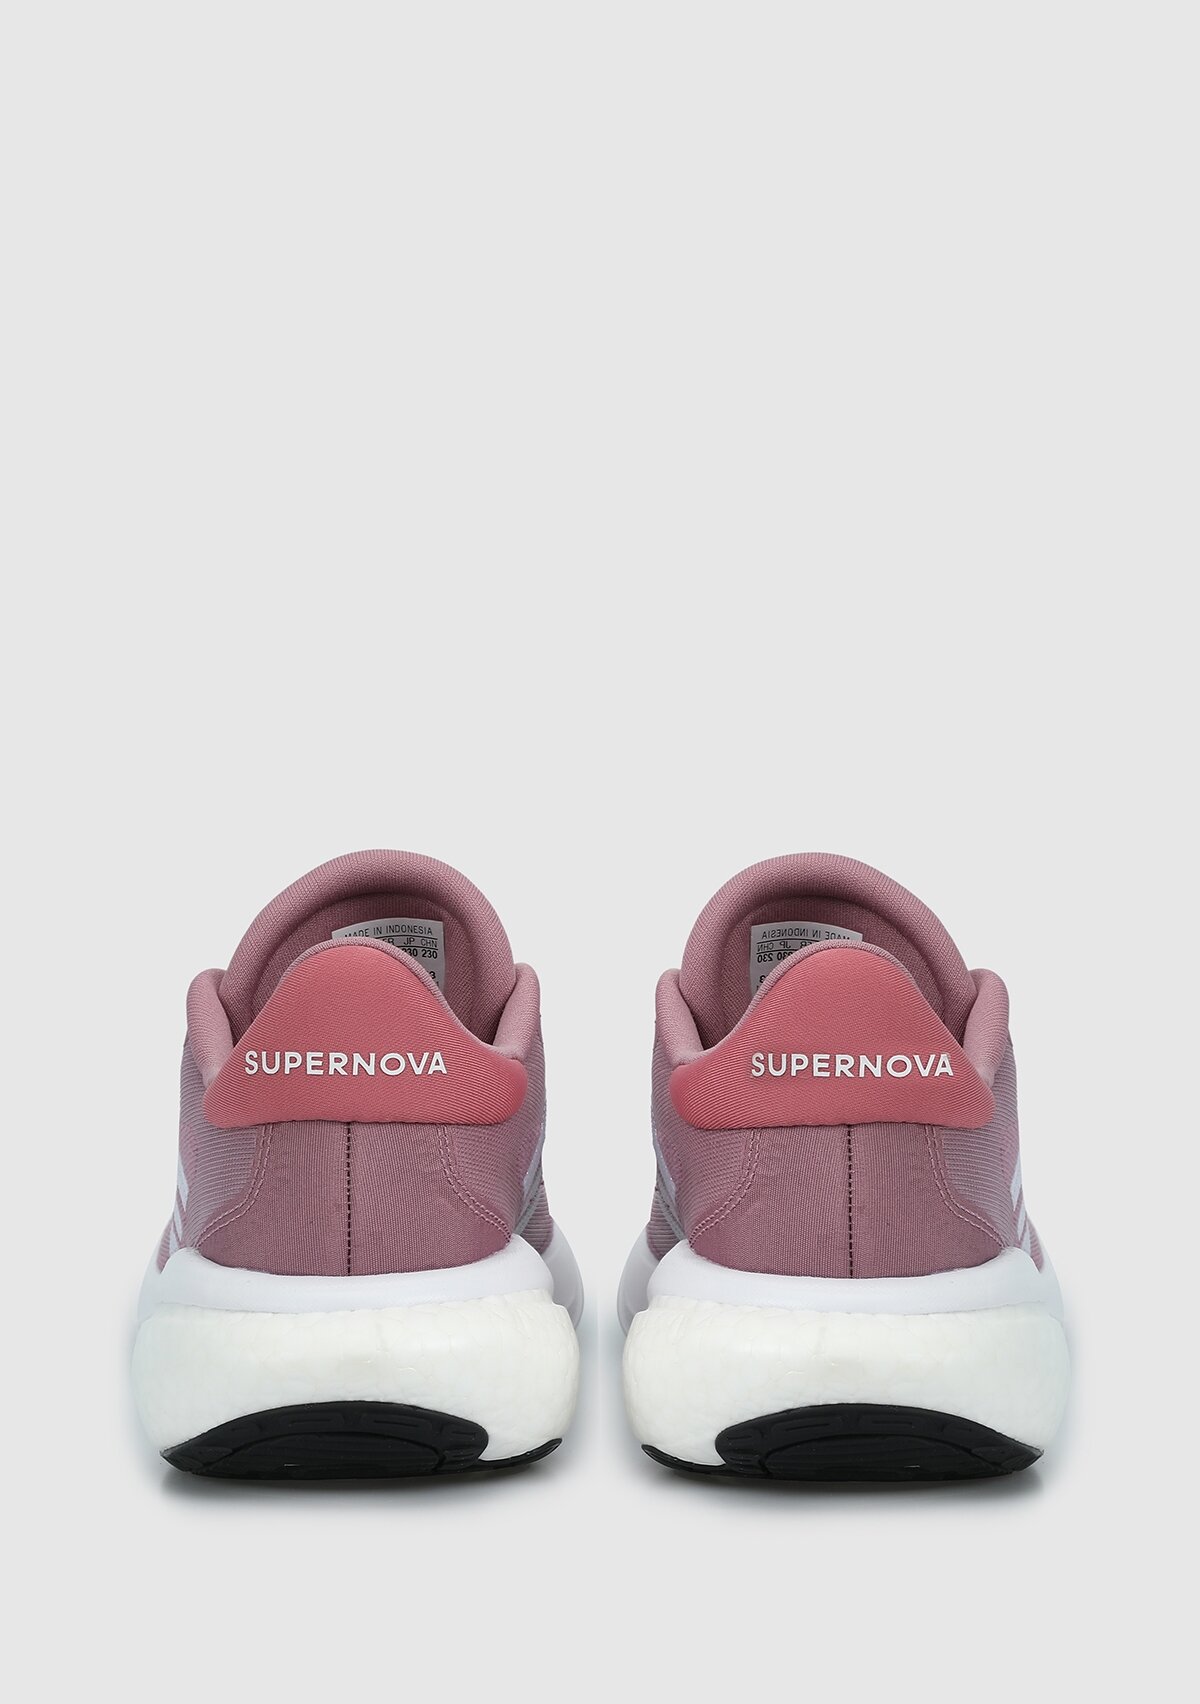 adidas Supernova 3 W mor kadın koşu Ayakkabısı ıe4352